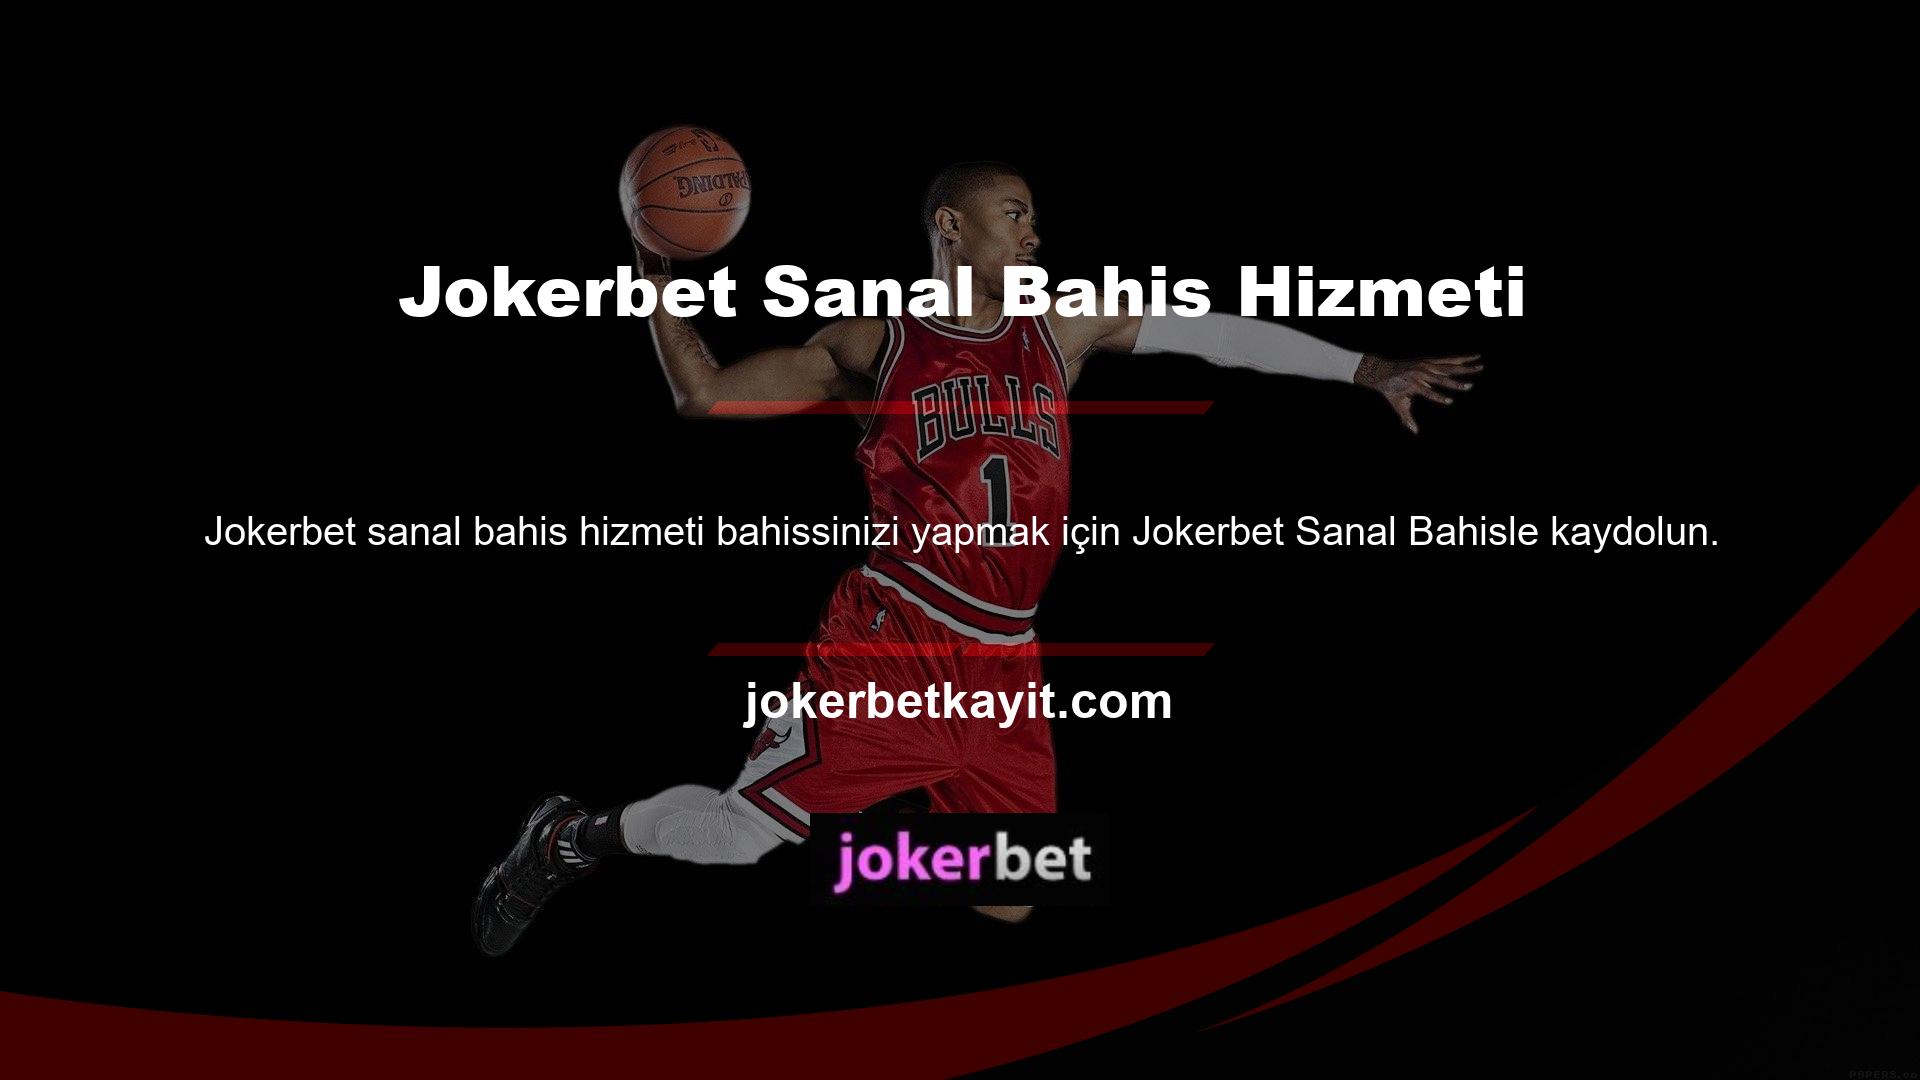 Jokerbet ayrıca çevrimiçi bahis de sunmaktadır